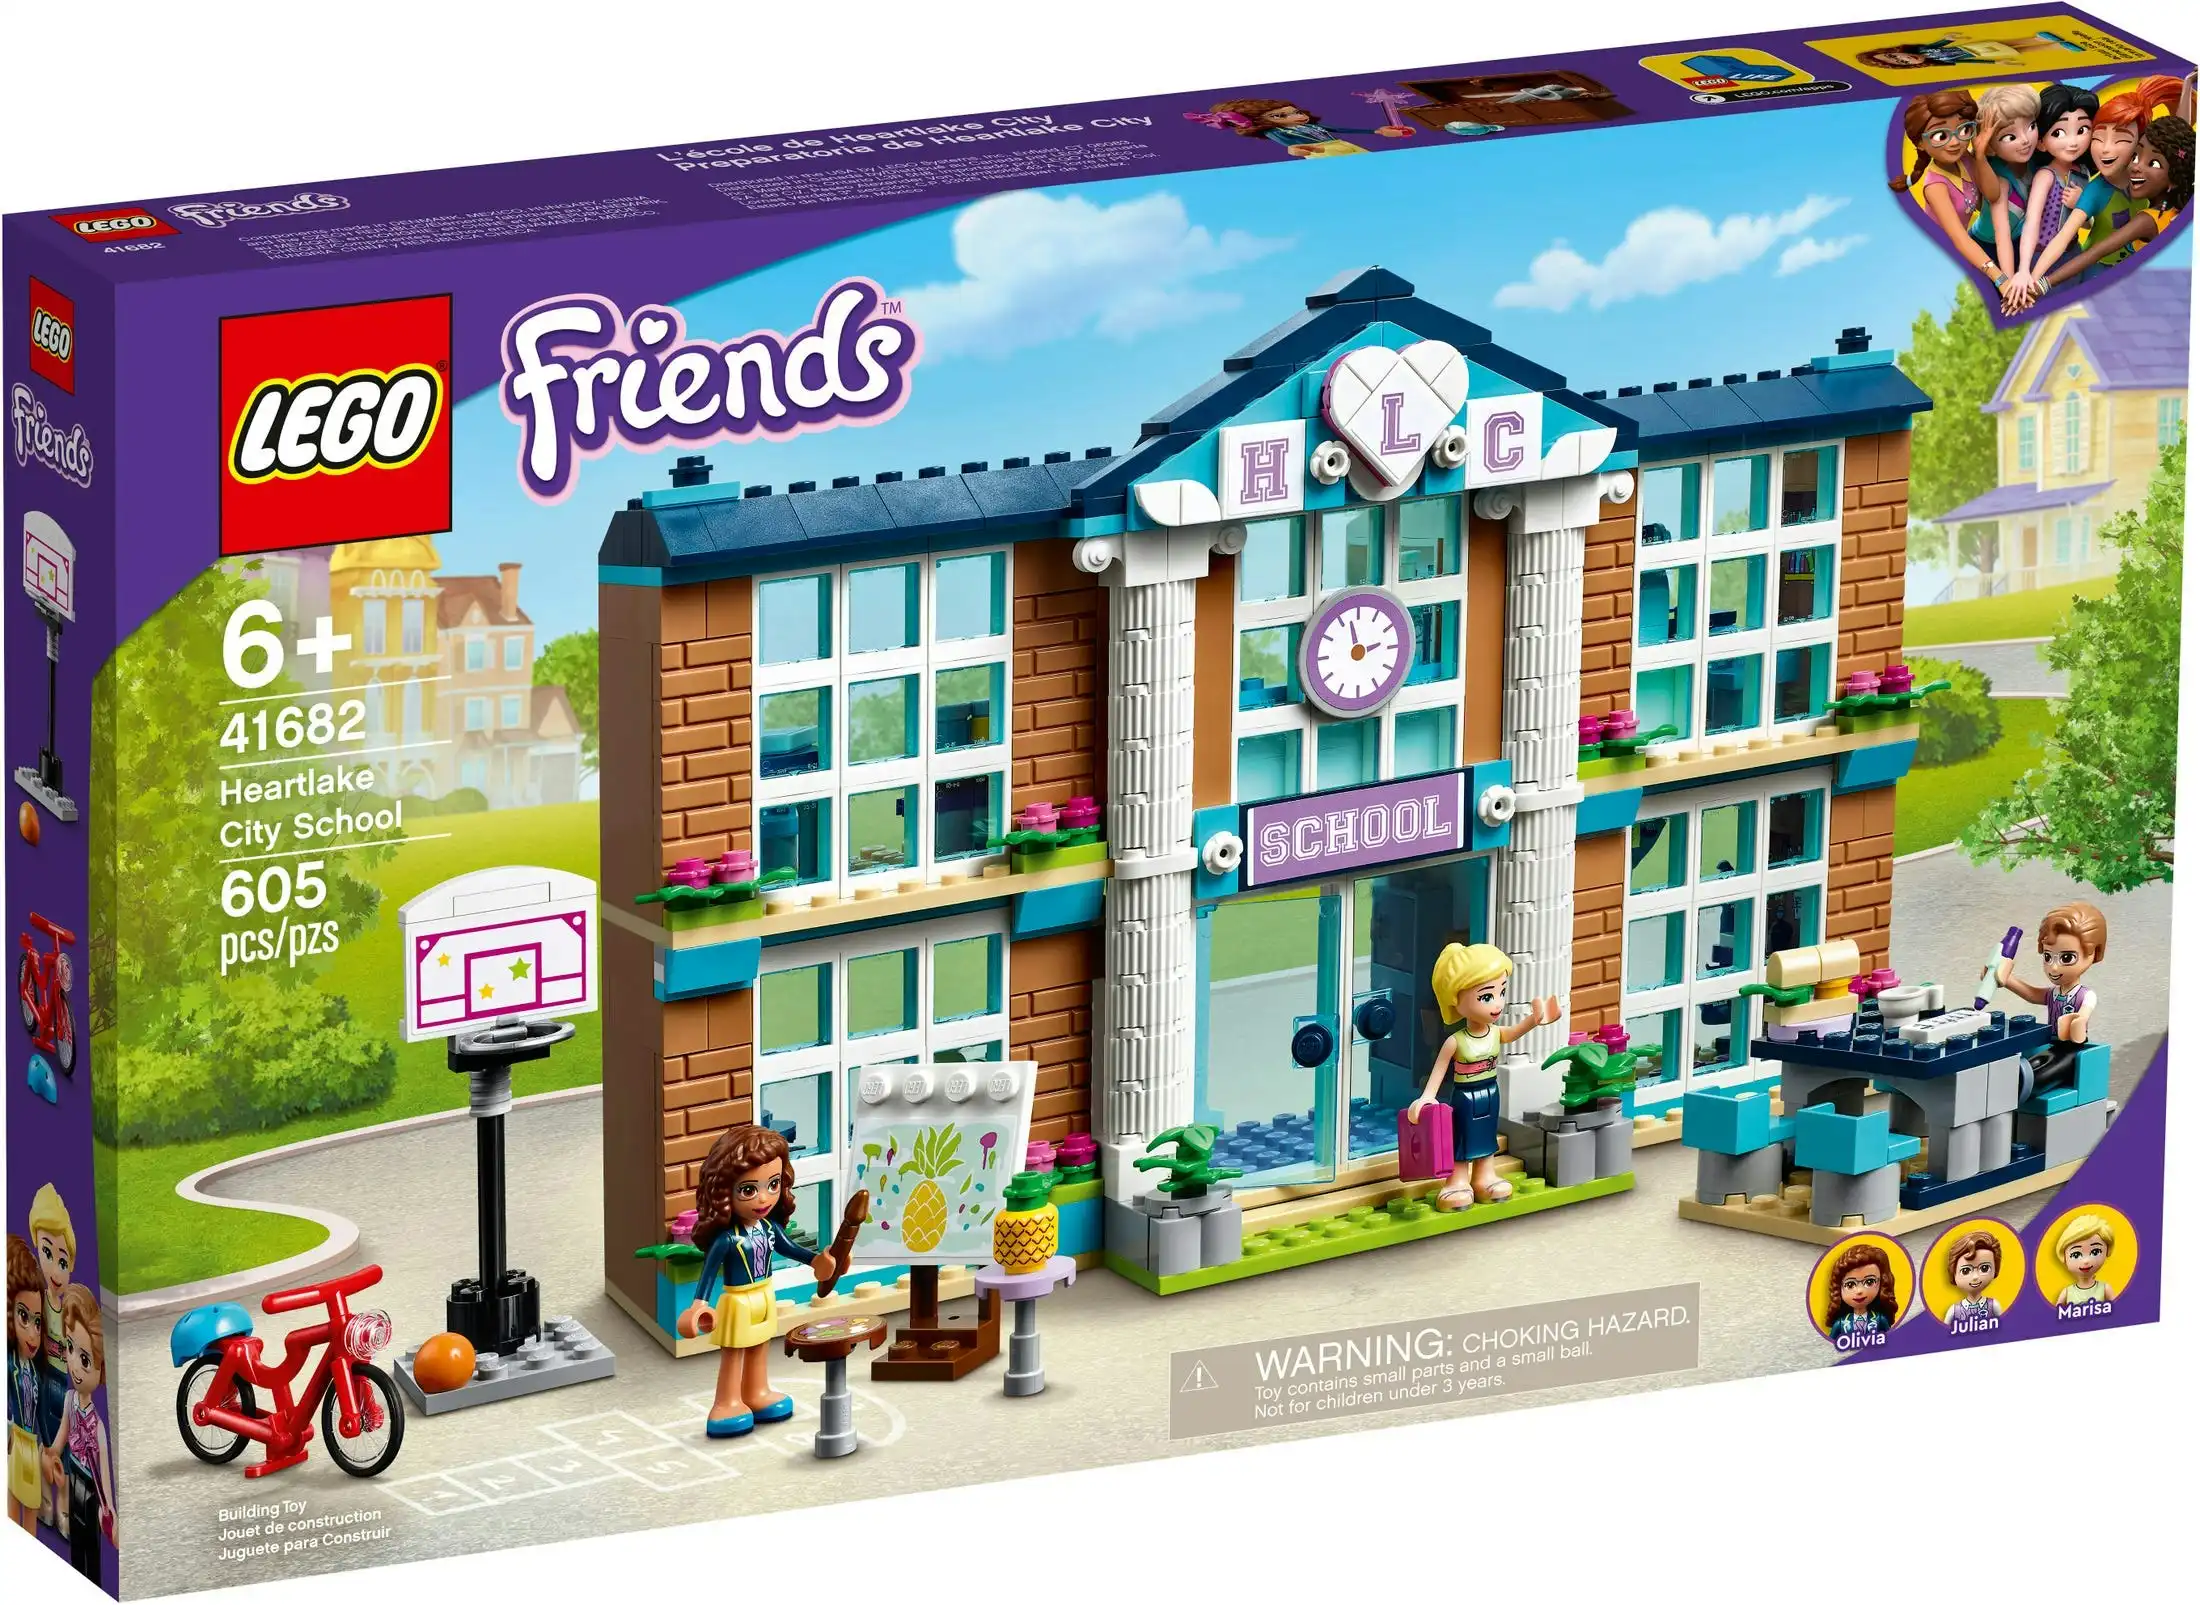 LEGO 41682 Heartlake City School - Friends